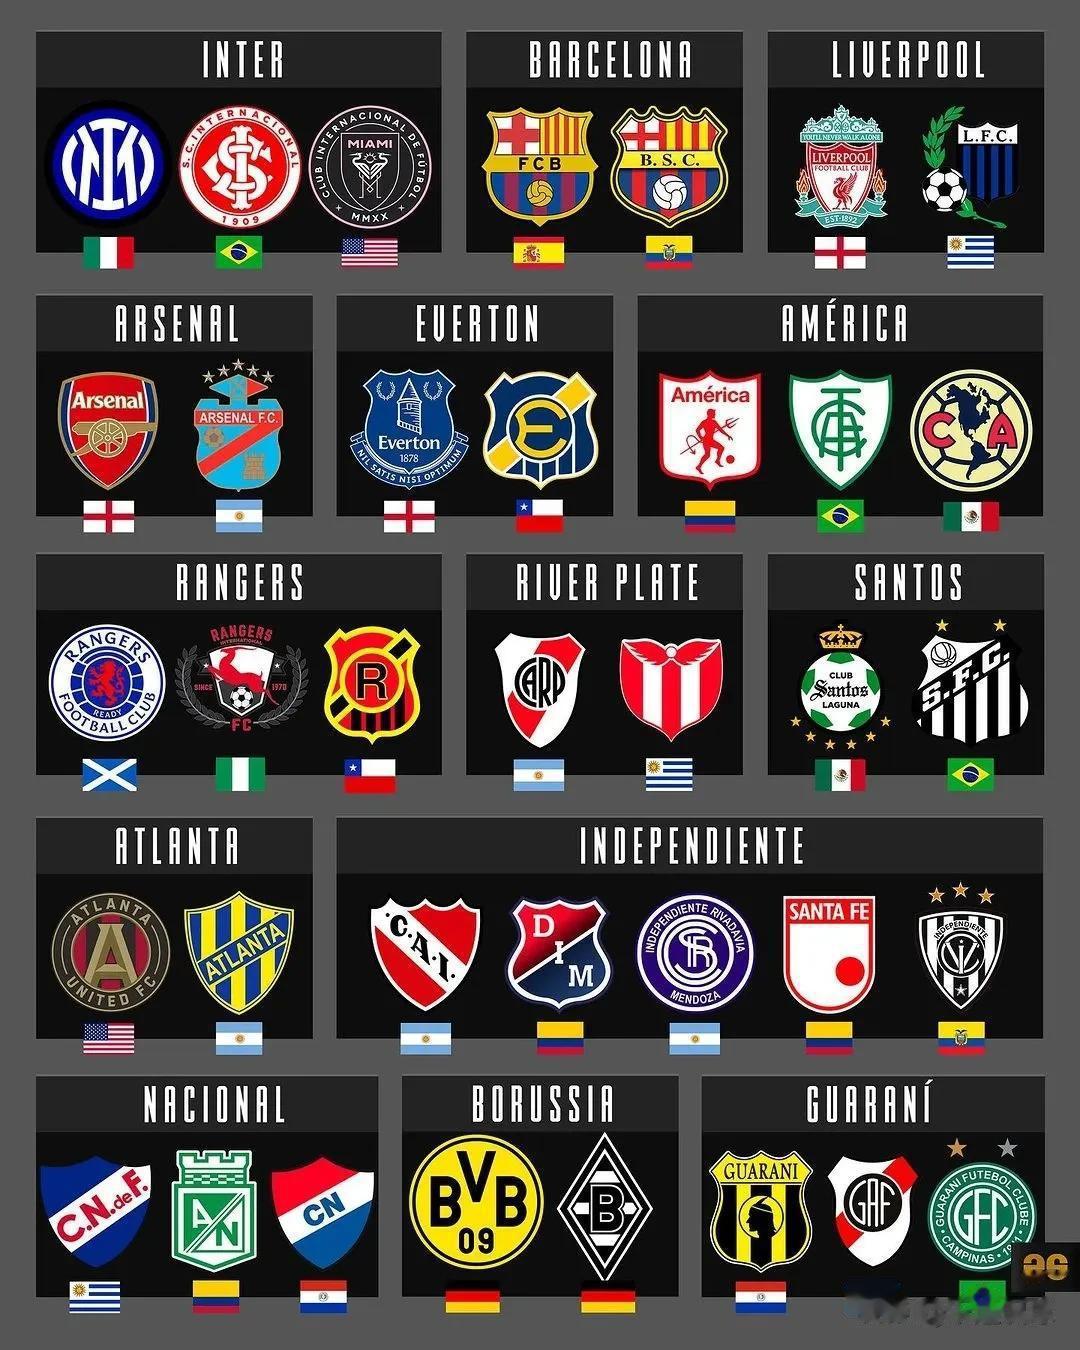 国际足坛中，重名的俱乐部有多少？厄瓜多尔也有叫巴塞罗那的俱乐部，乌拉圭也有叫利物(1)